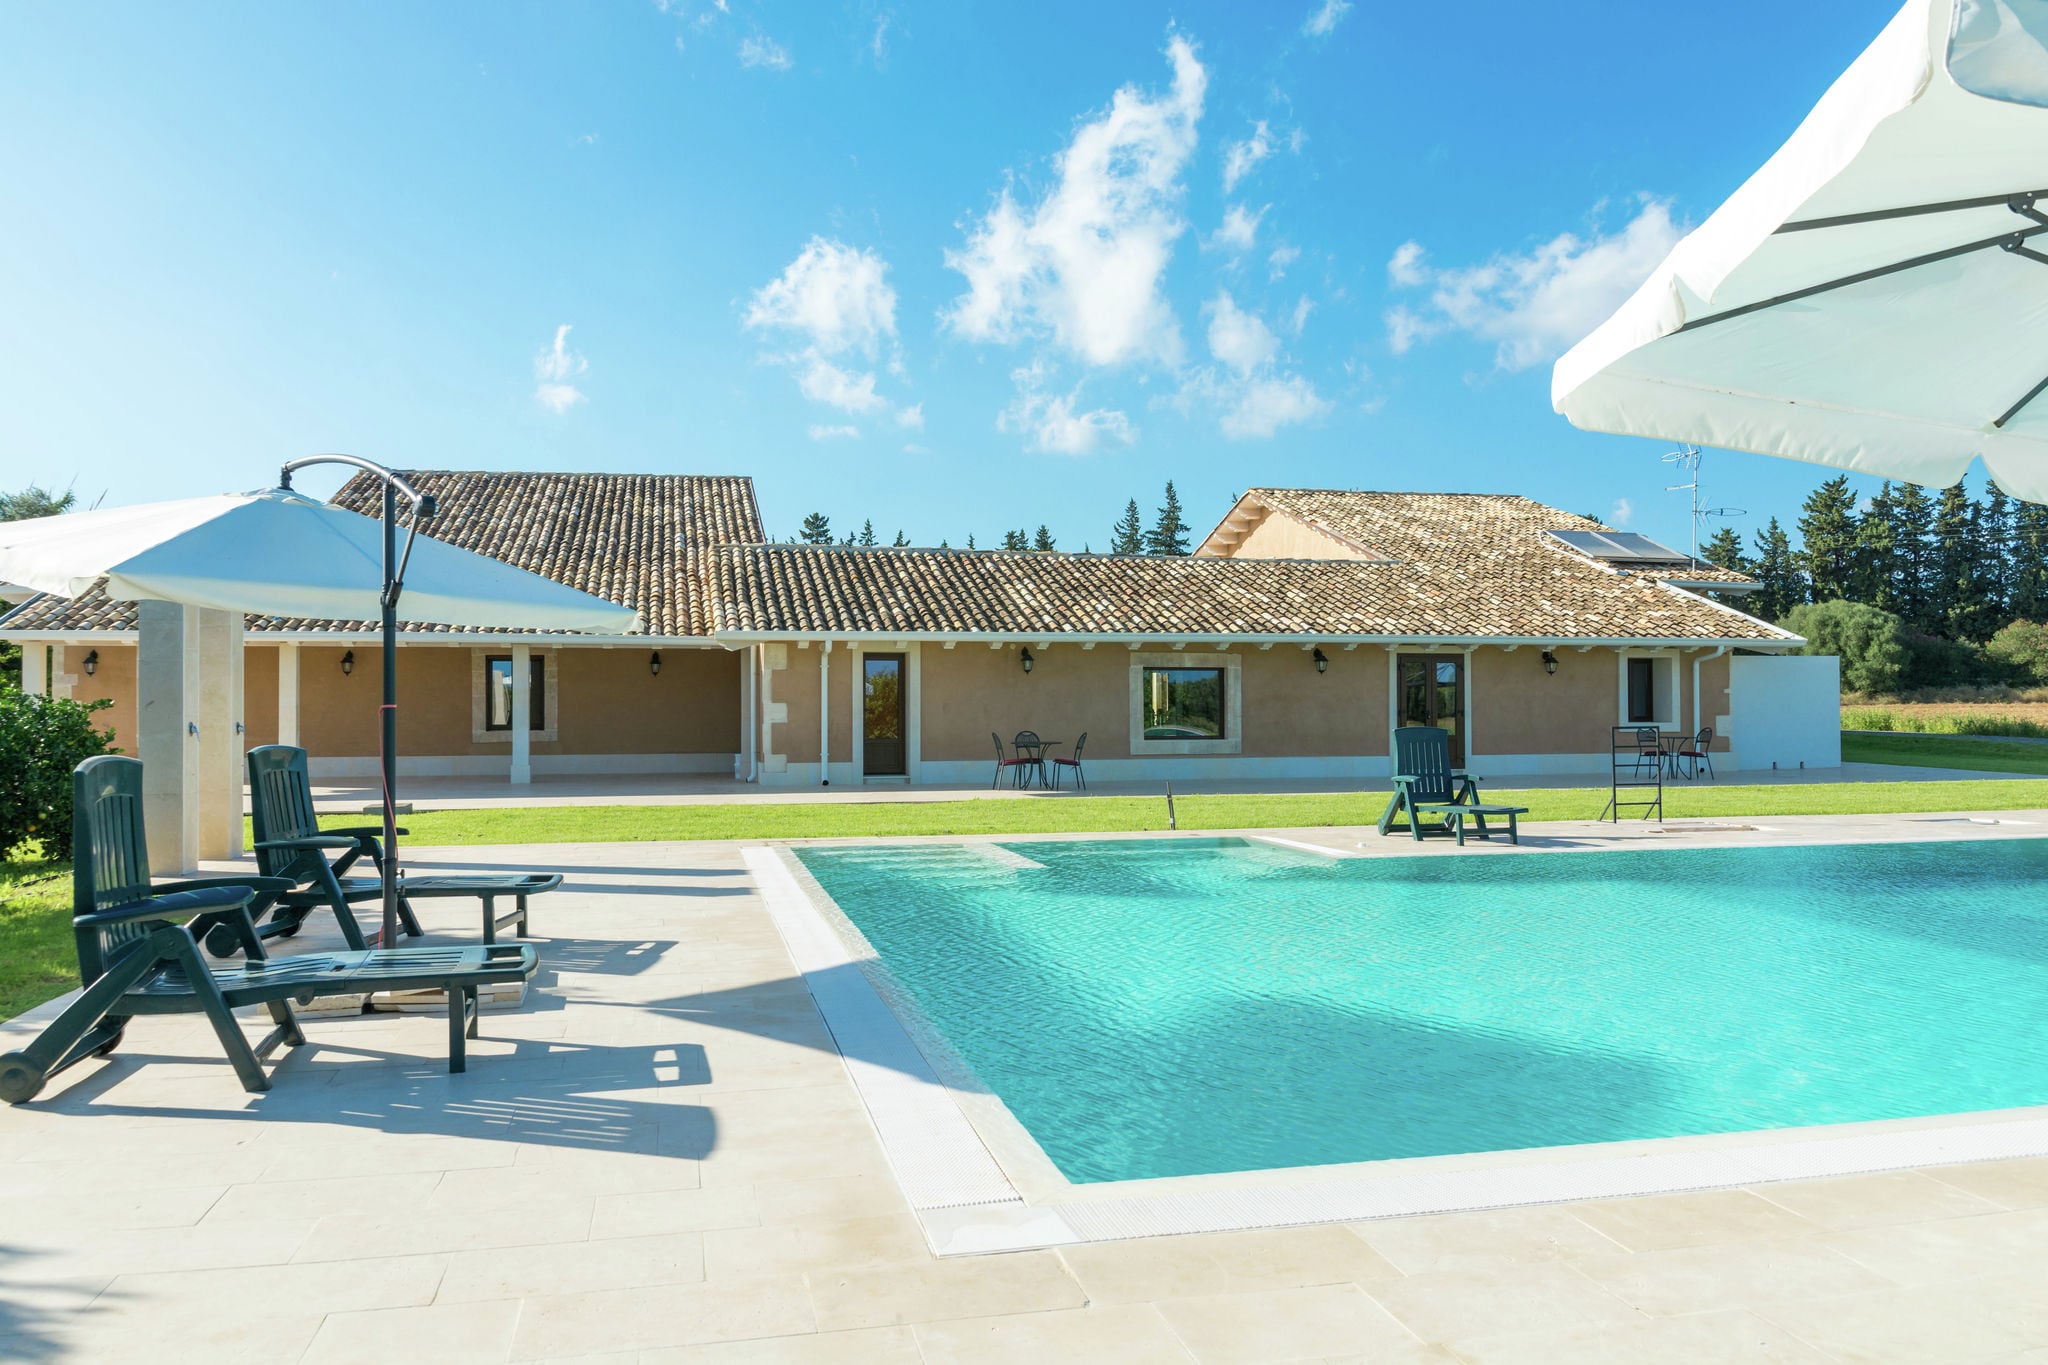 Luxuriöses Ferienhaus mit Swimmingpool in Syrakus, Italien